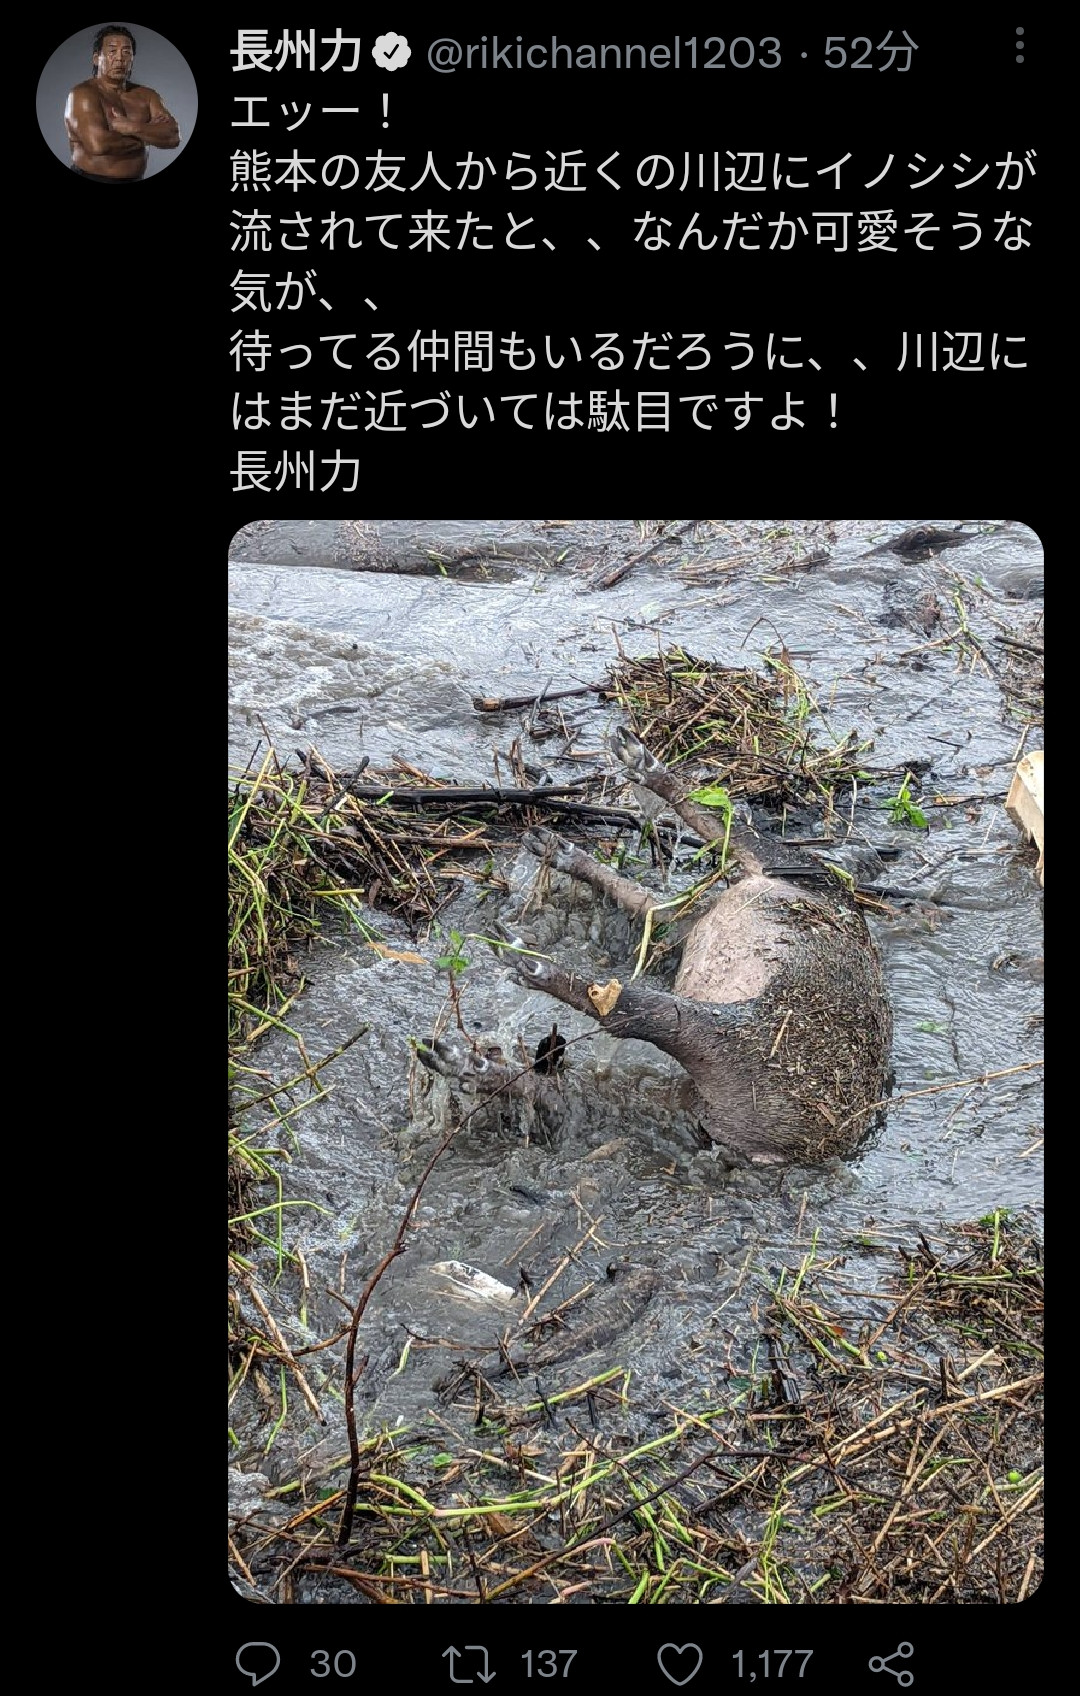 【画像】長州力さん、Twitterに動物の死骸を投稿